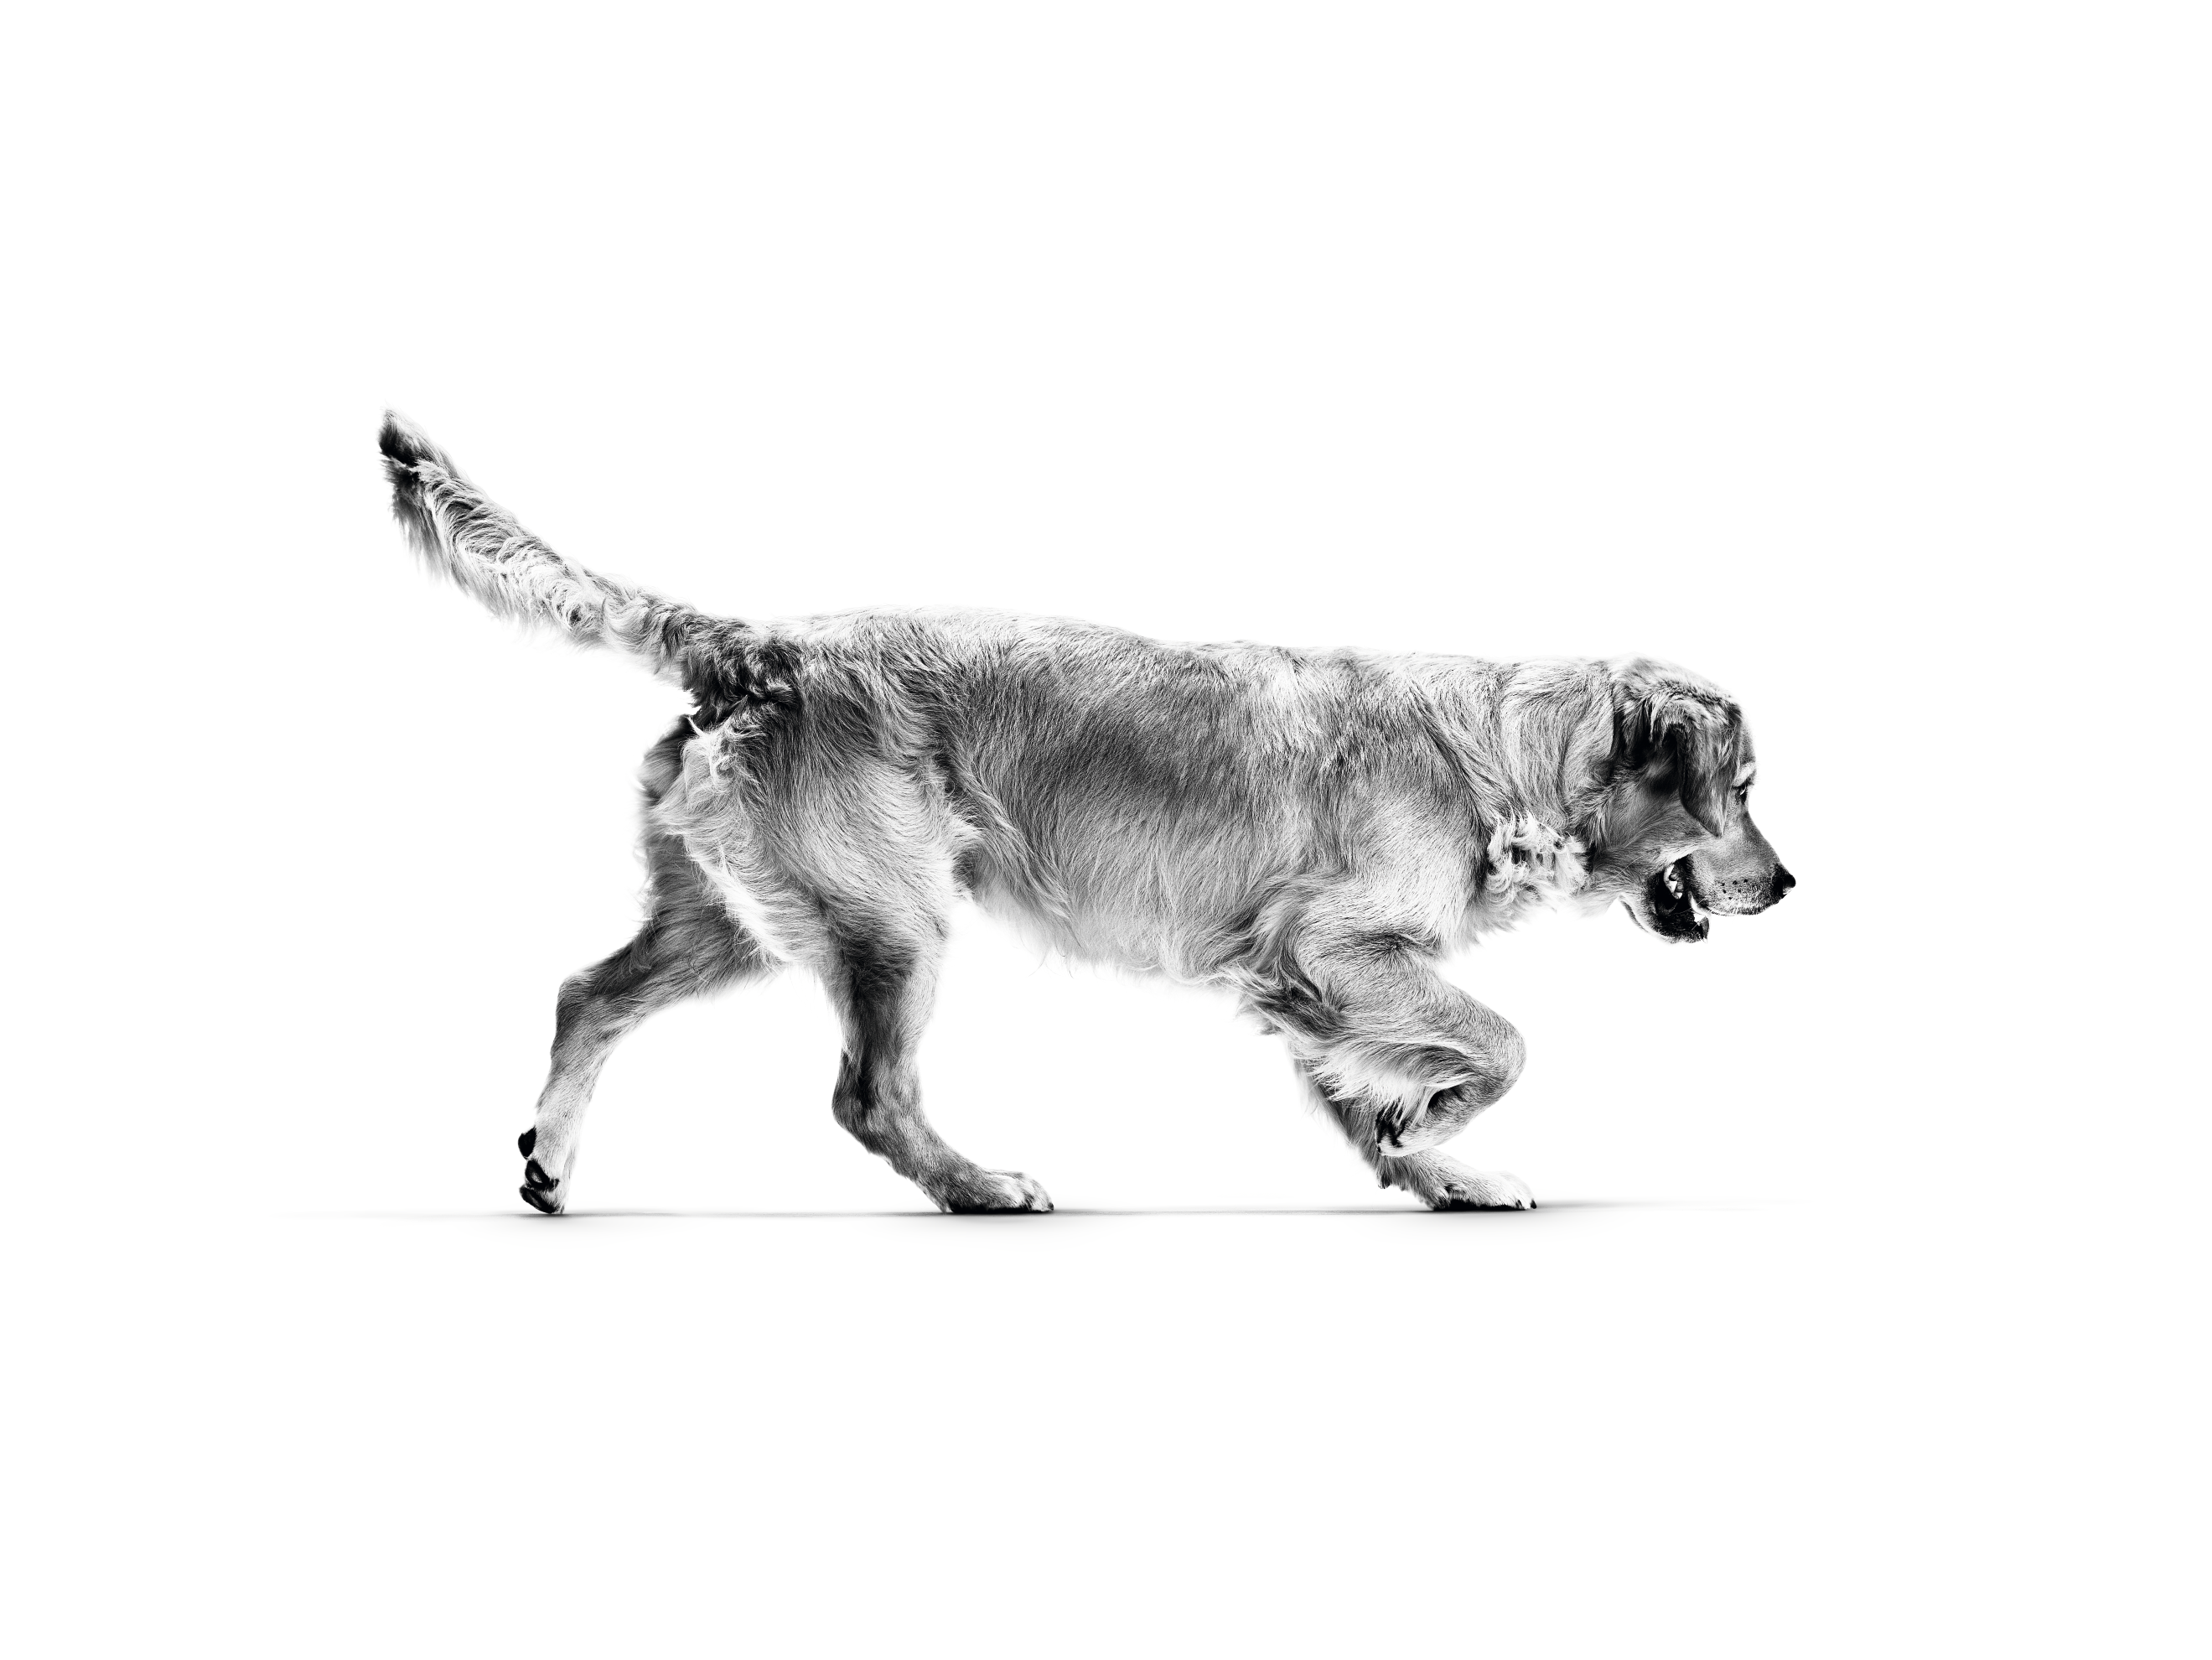 Anjing Golden Retriever dewasa berlari dalam warna hitam putih pada latar belakang putih